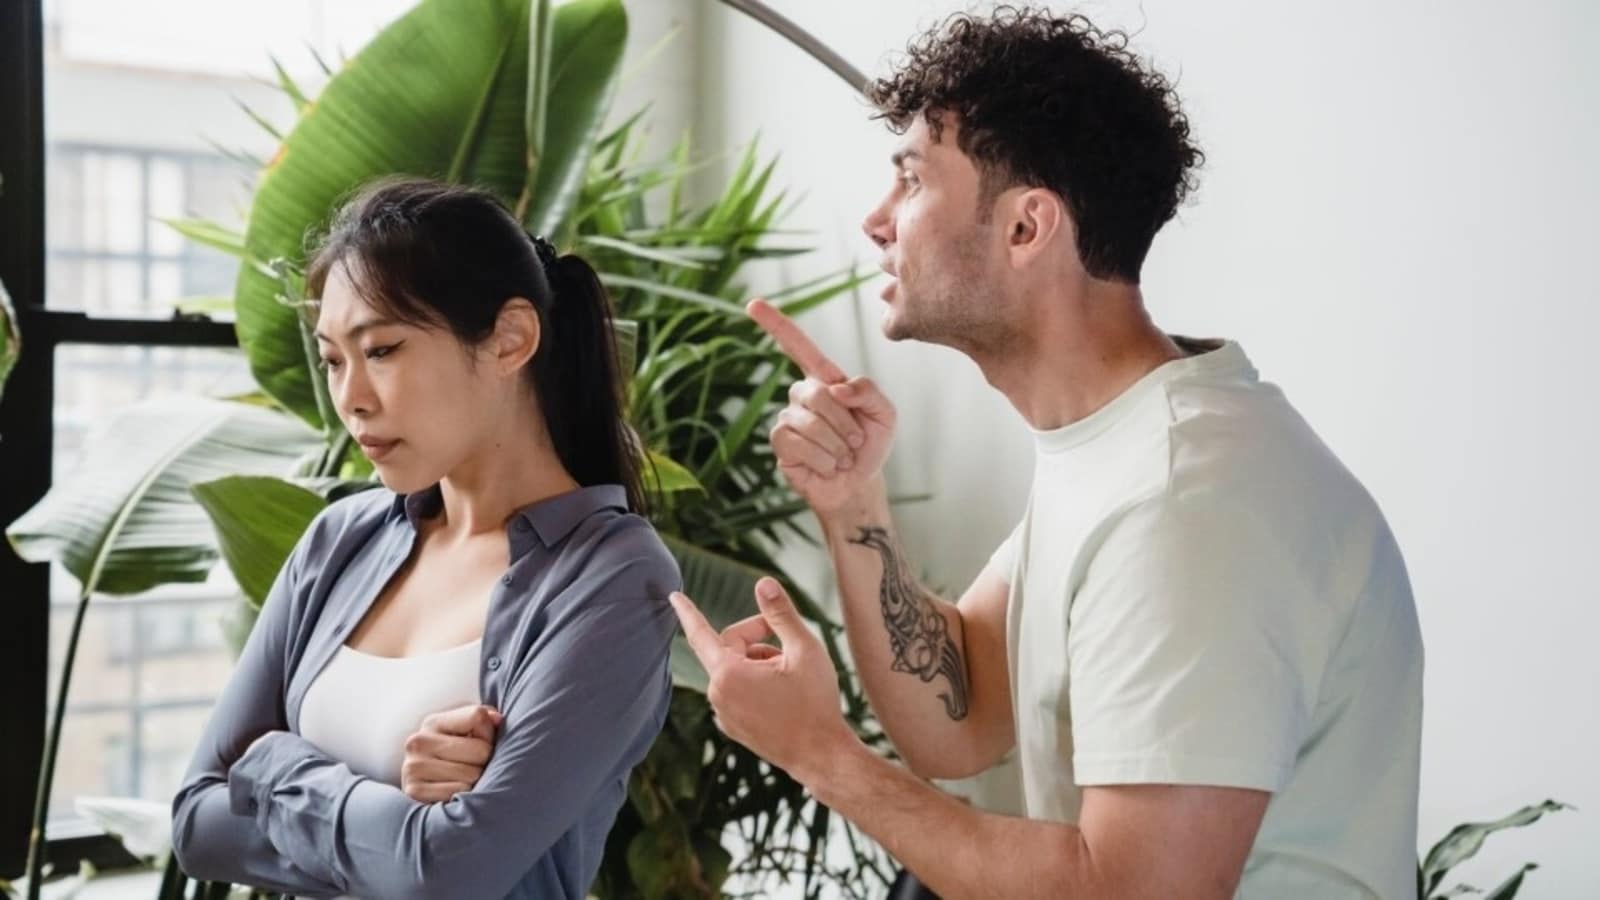 महिलाओं के आंसू सूंघने से पुरुषों का आक्रामक व्यवहार कम हो जाता है?  यहाँ अध्ययन क्या कहता है